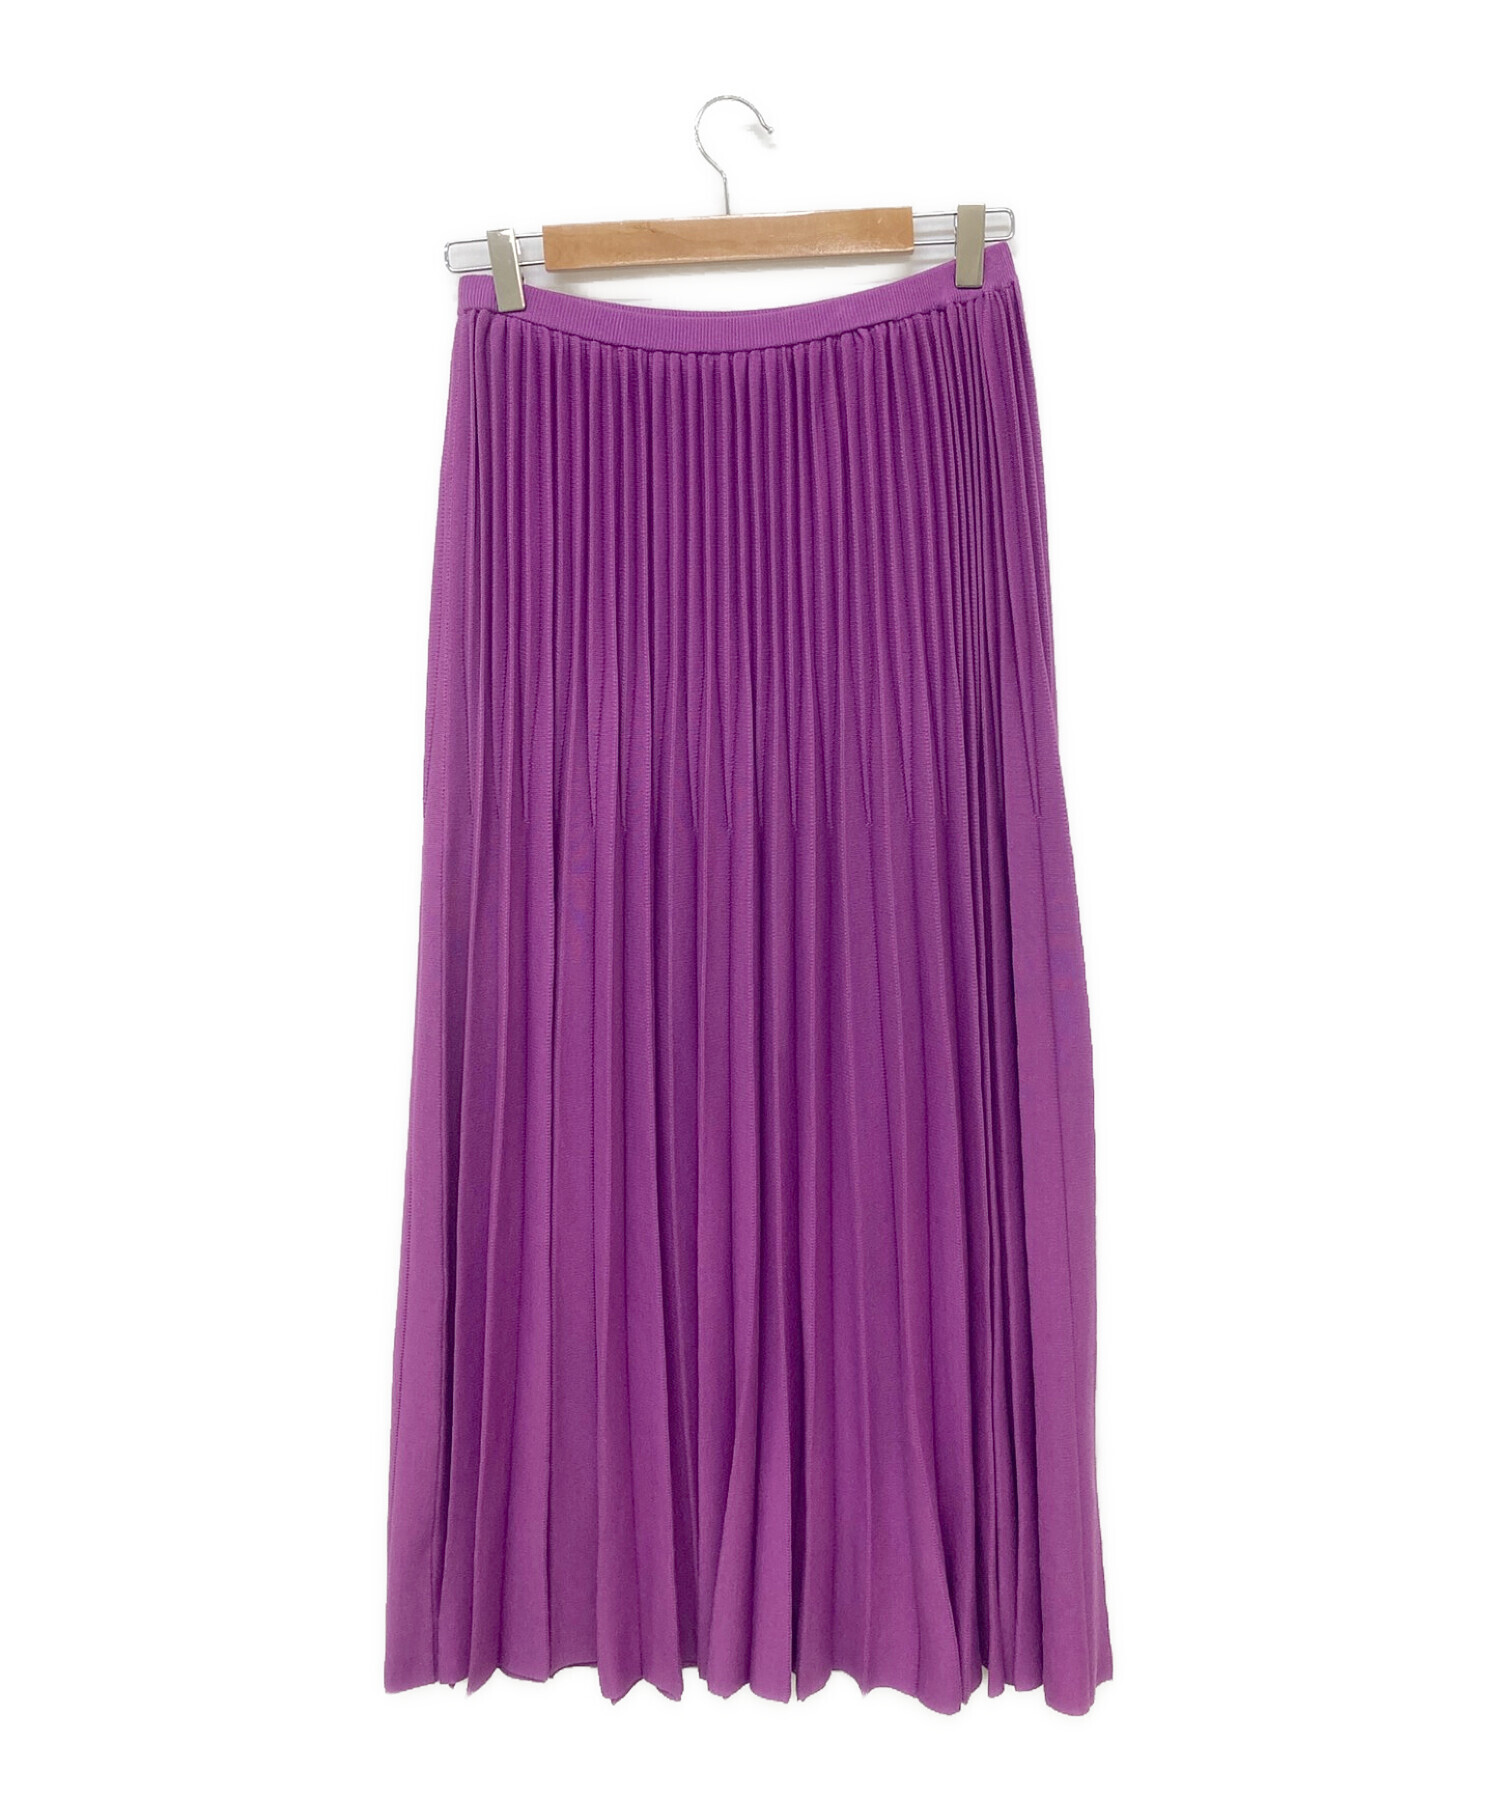 ドゥロワー Drawer スカート パープル プリーツスカート 紫